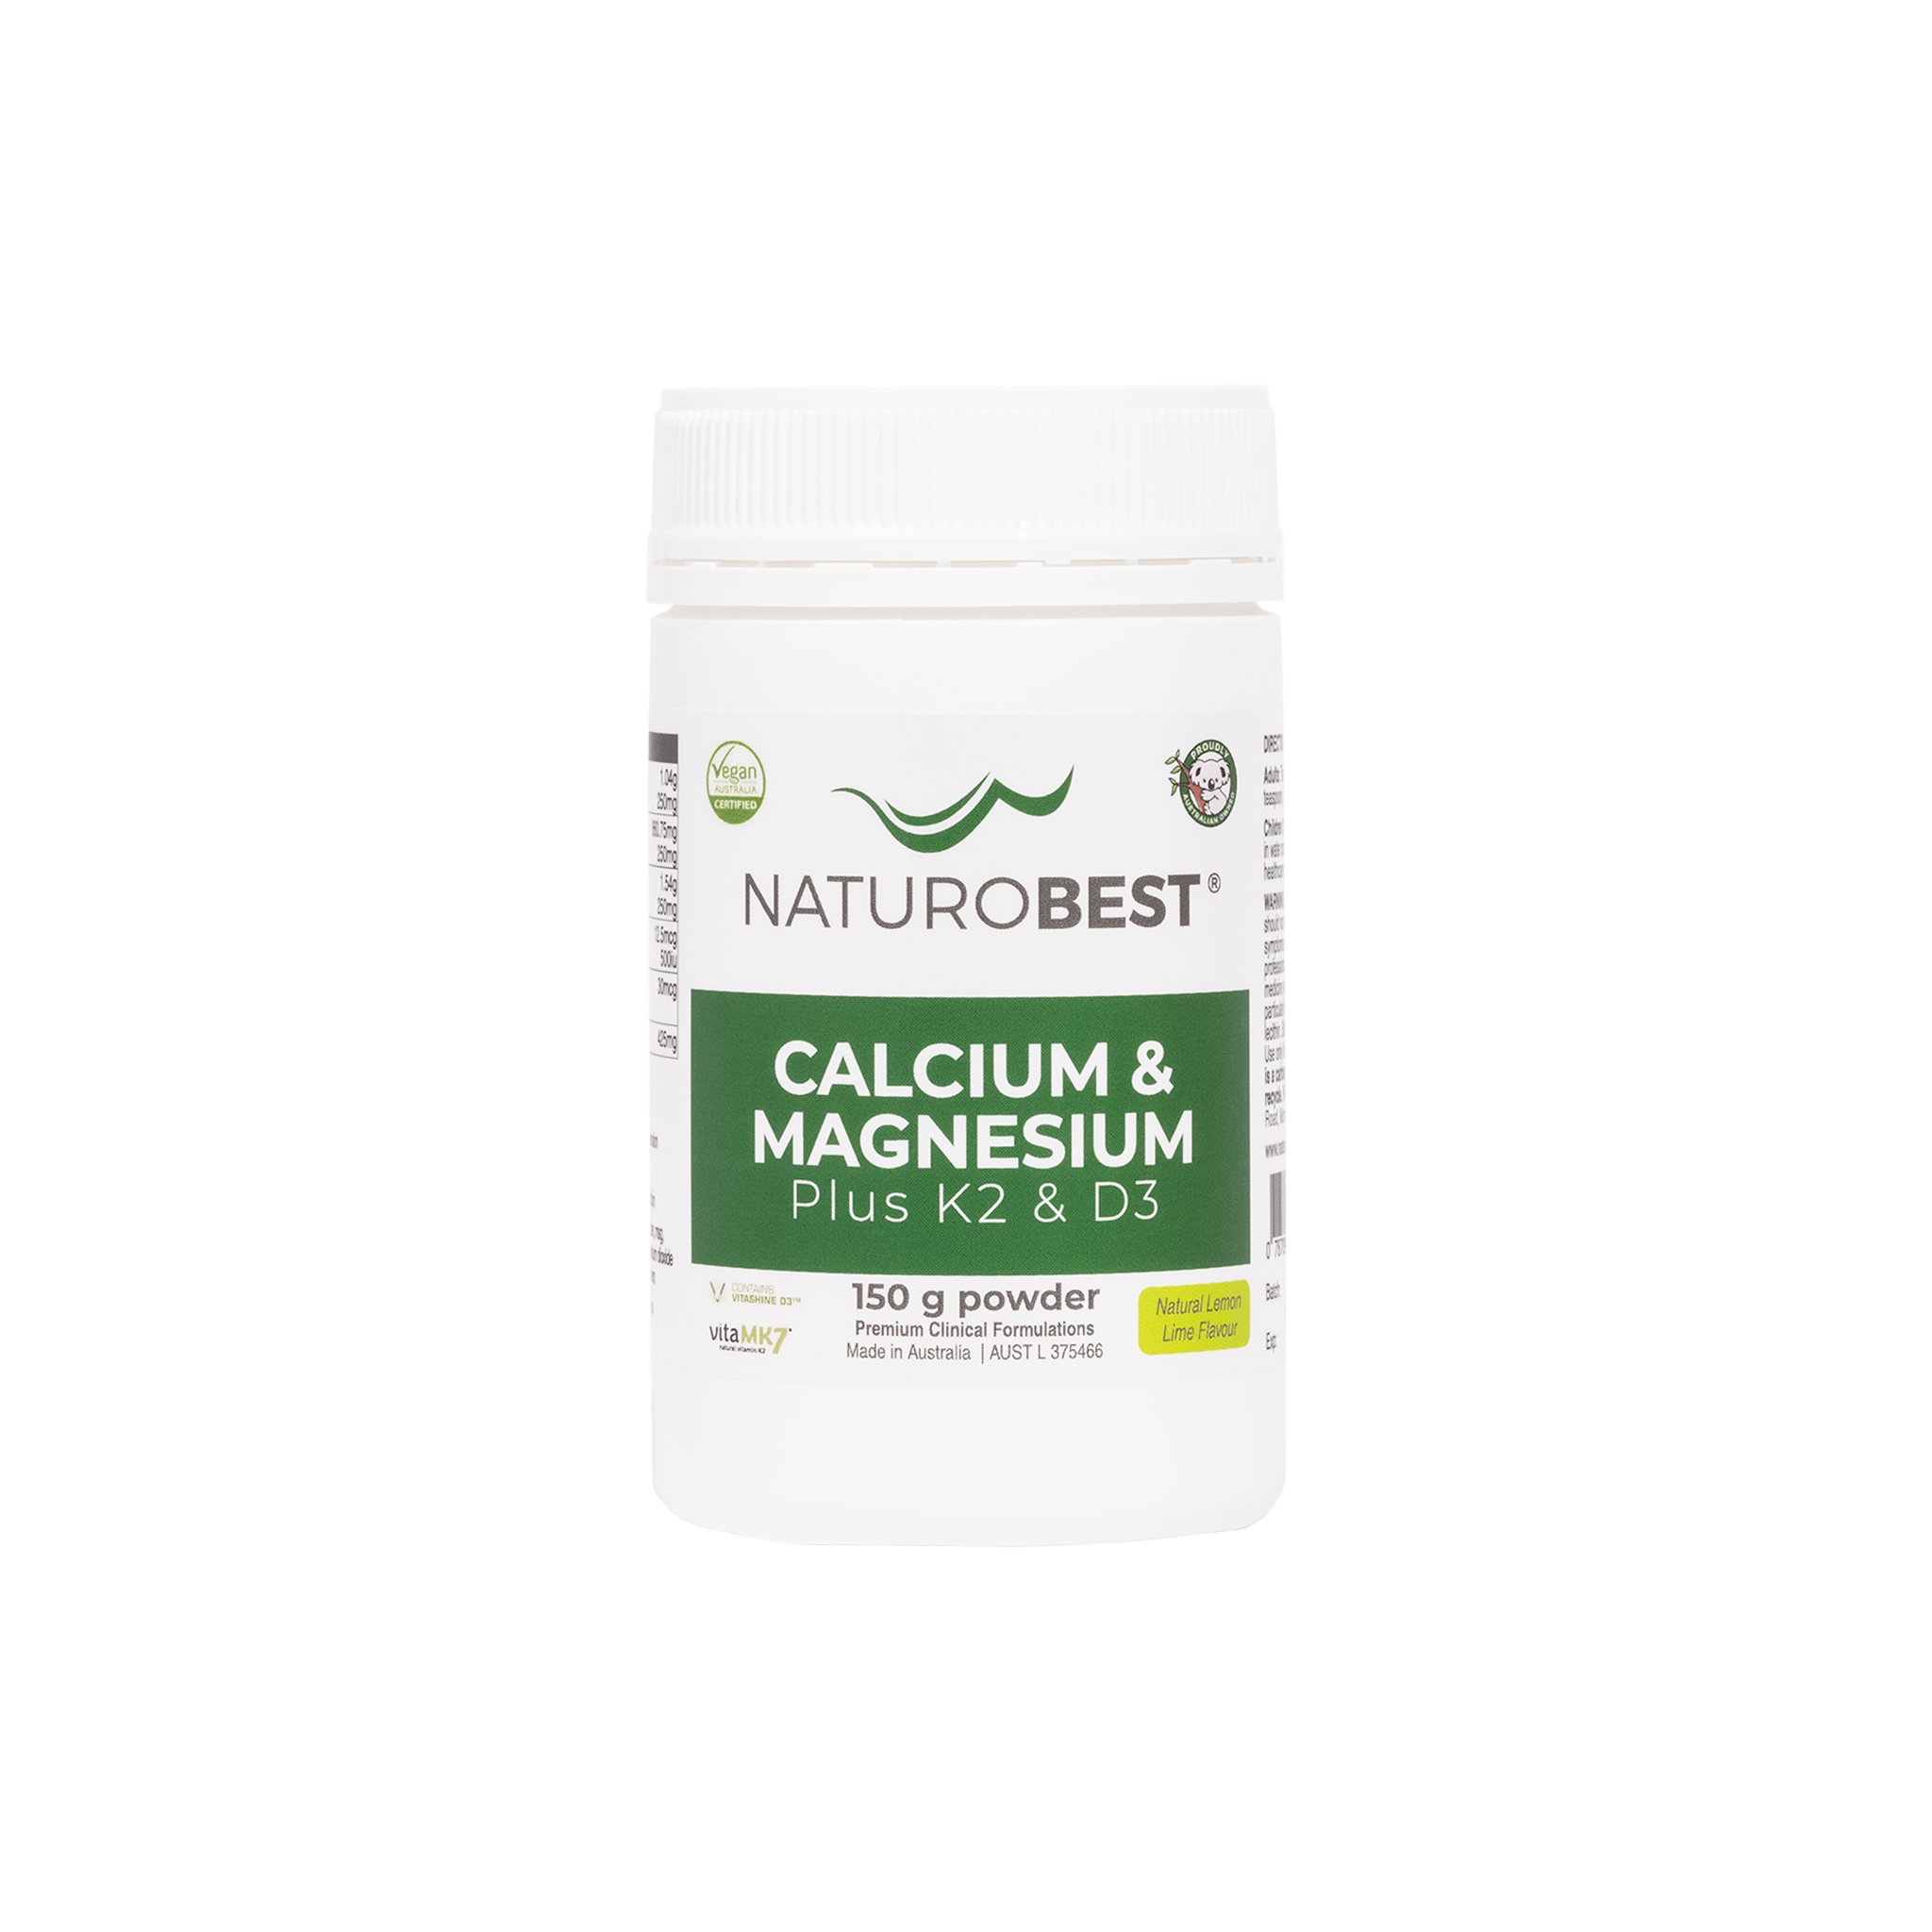 Calcium & Magnesium Plus K2 & D3 150gms - Carton